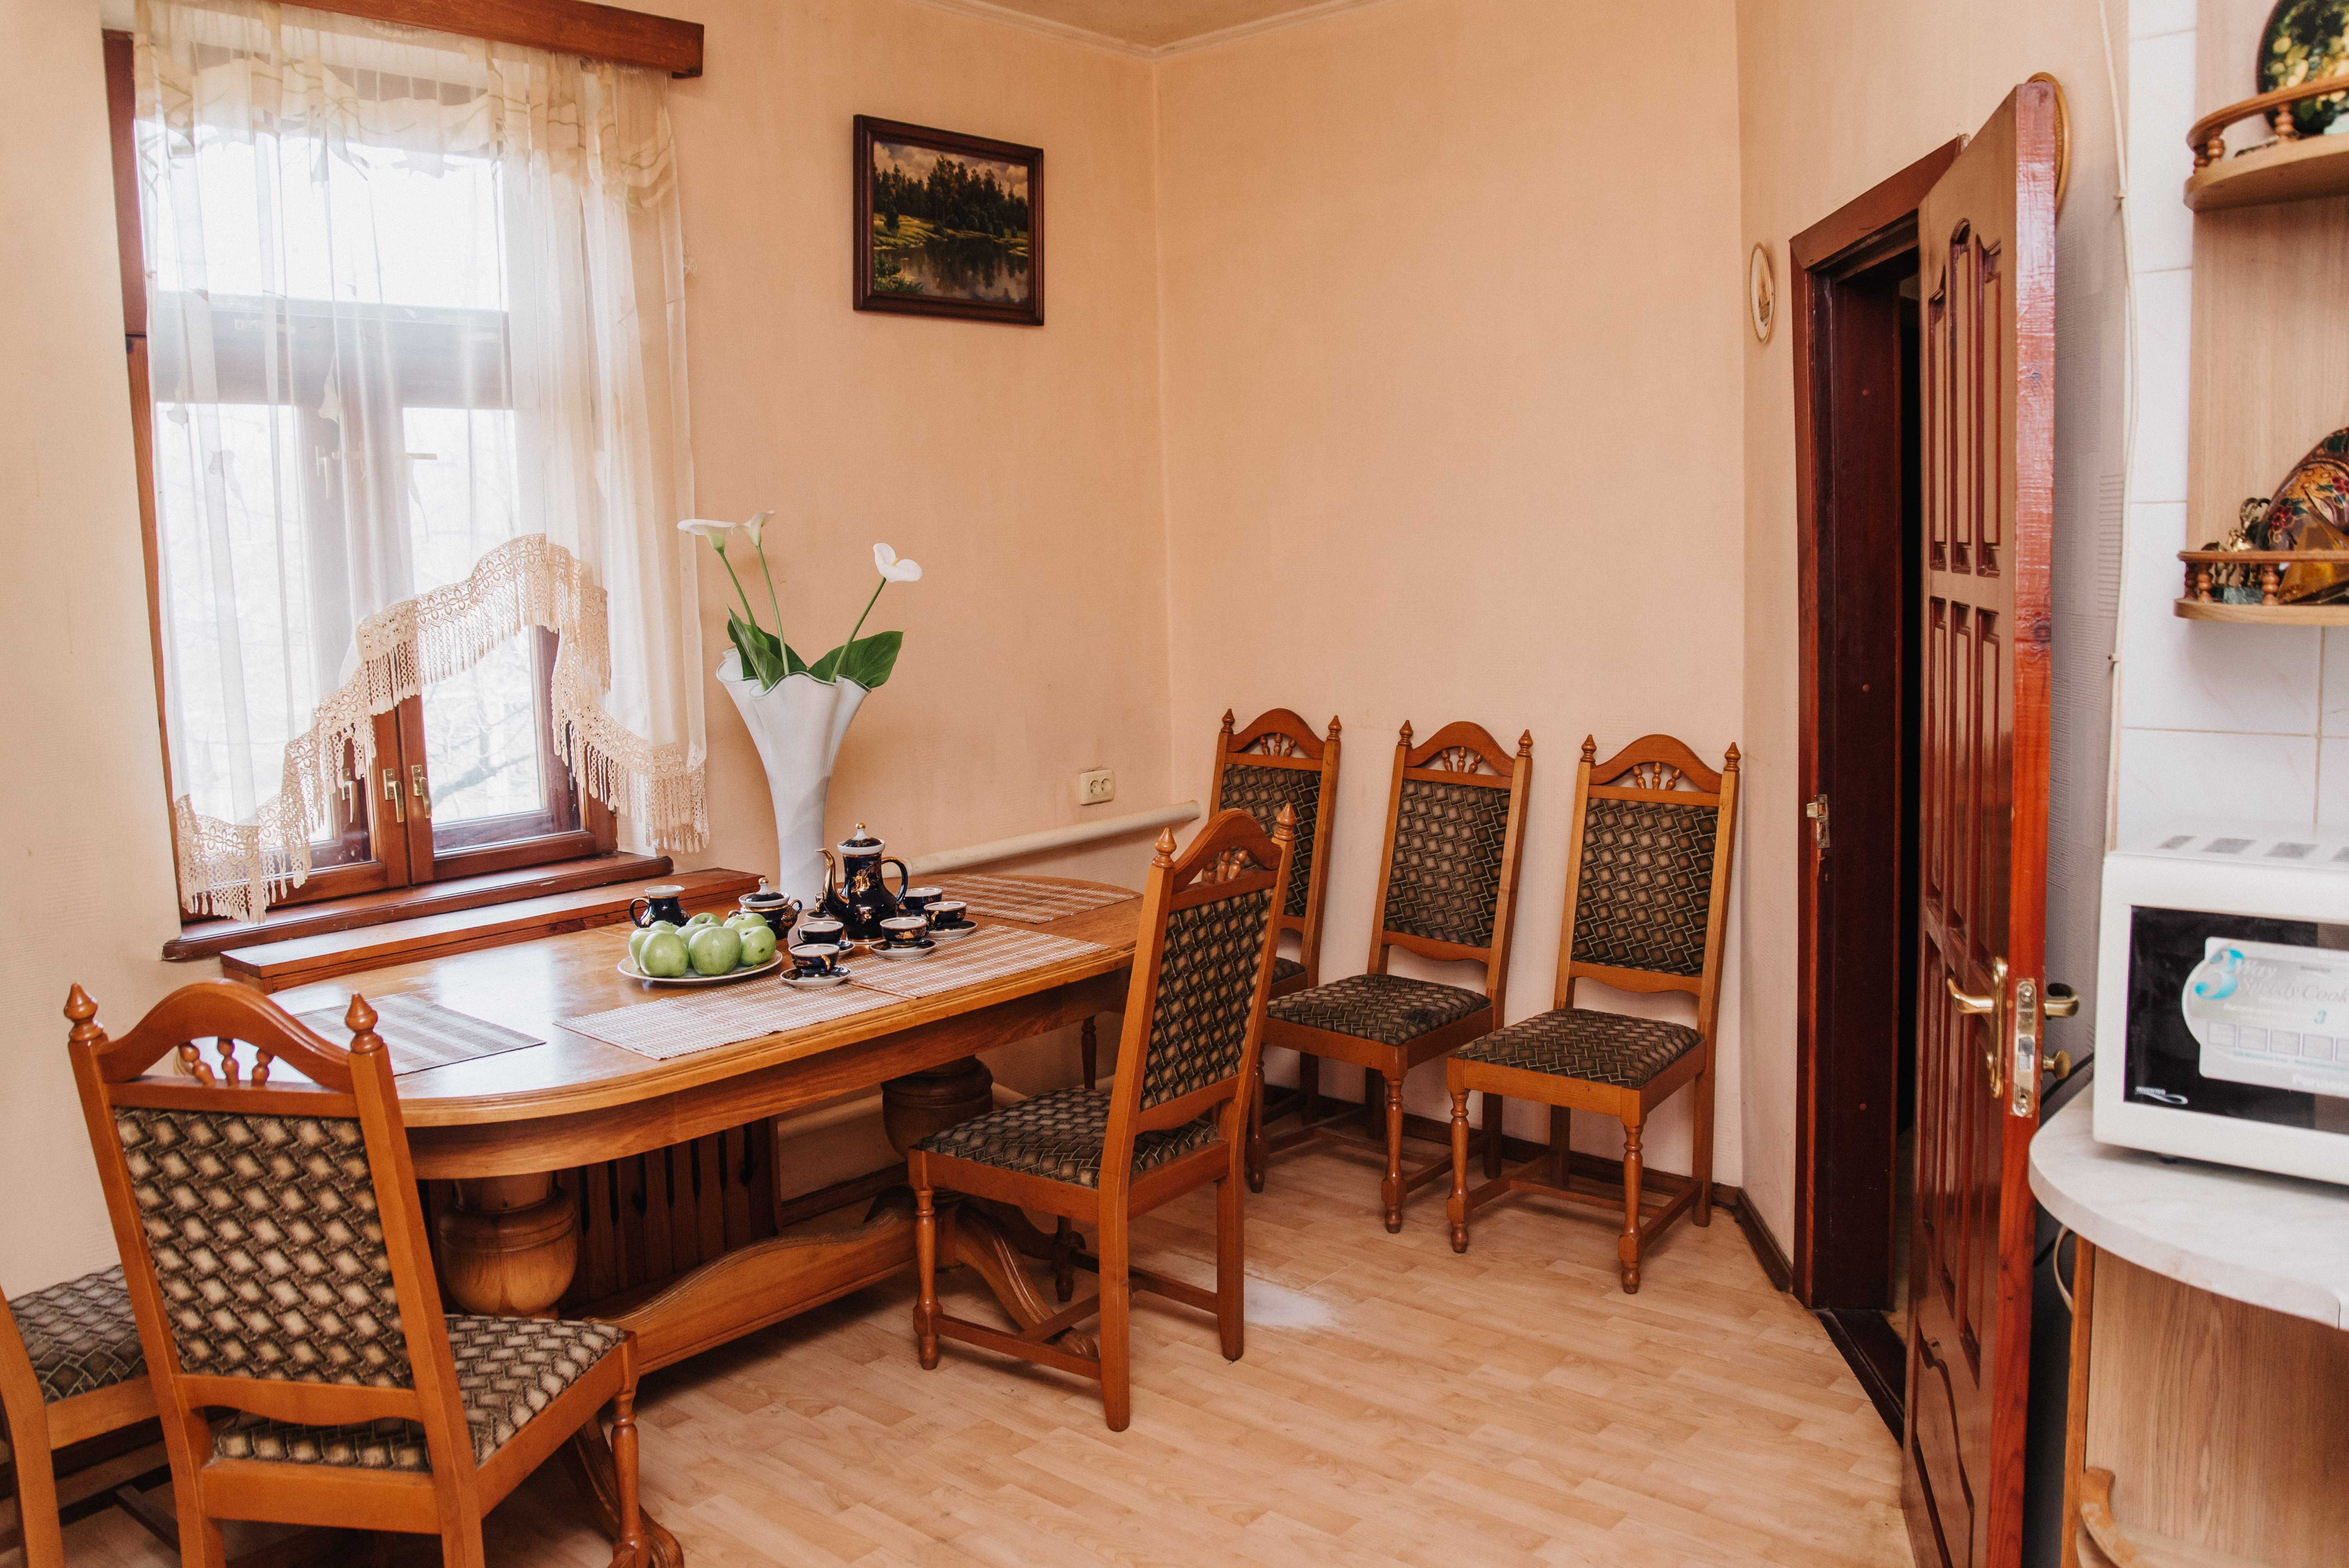 Продам дом поселок Хорошево Харьковская область